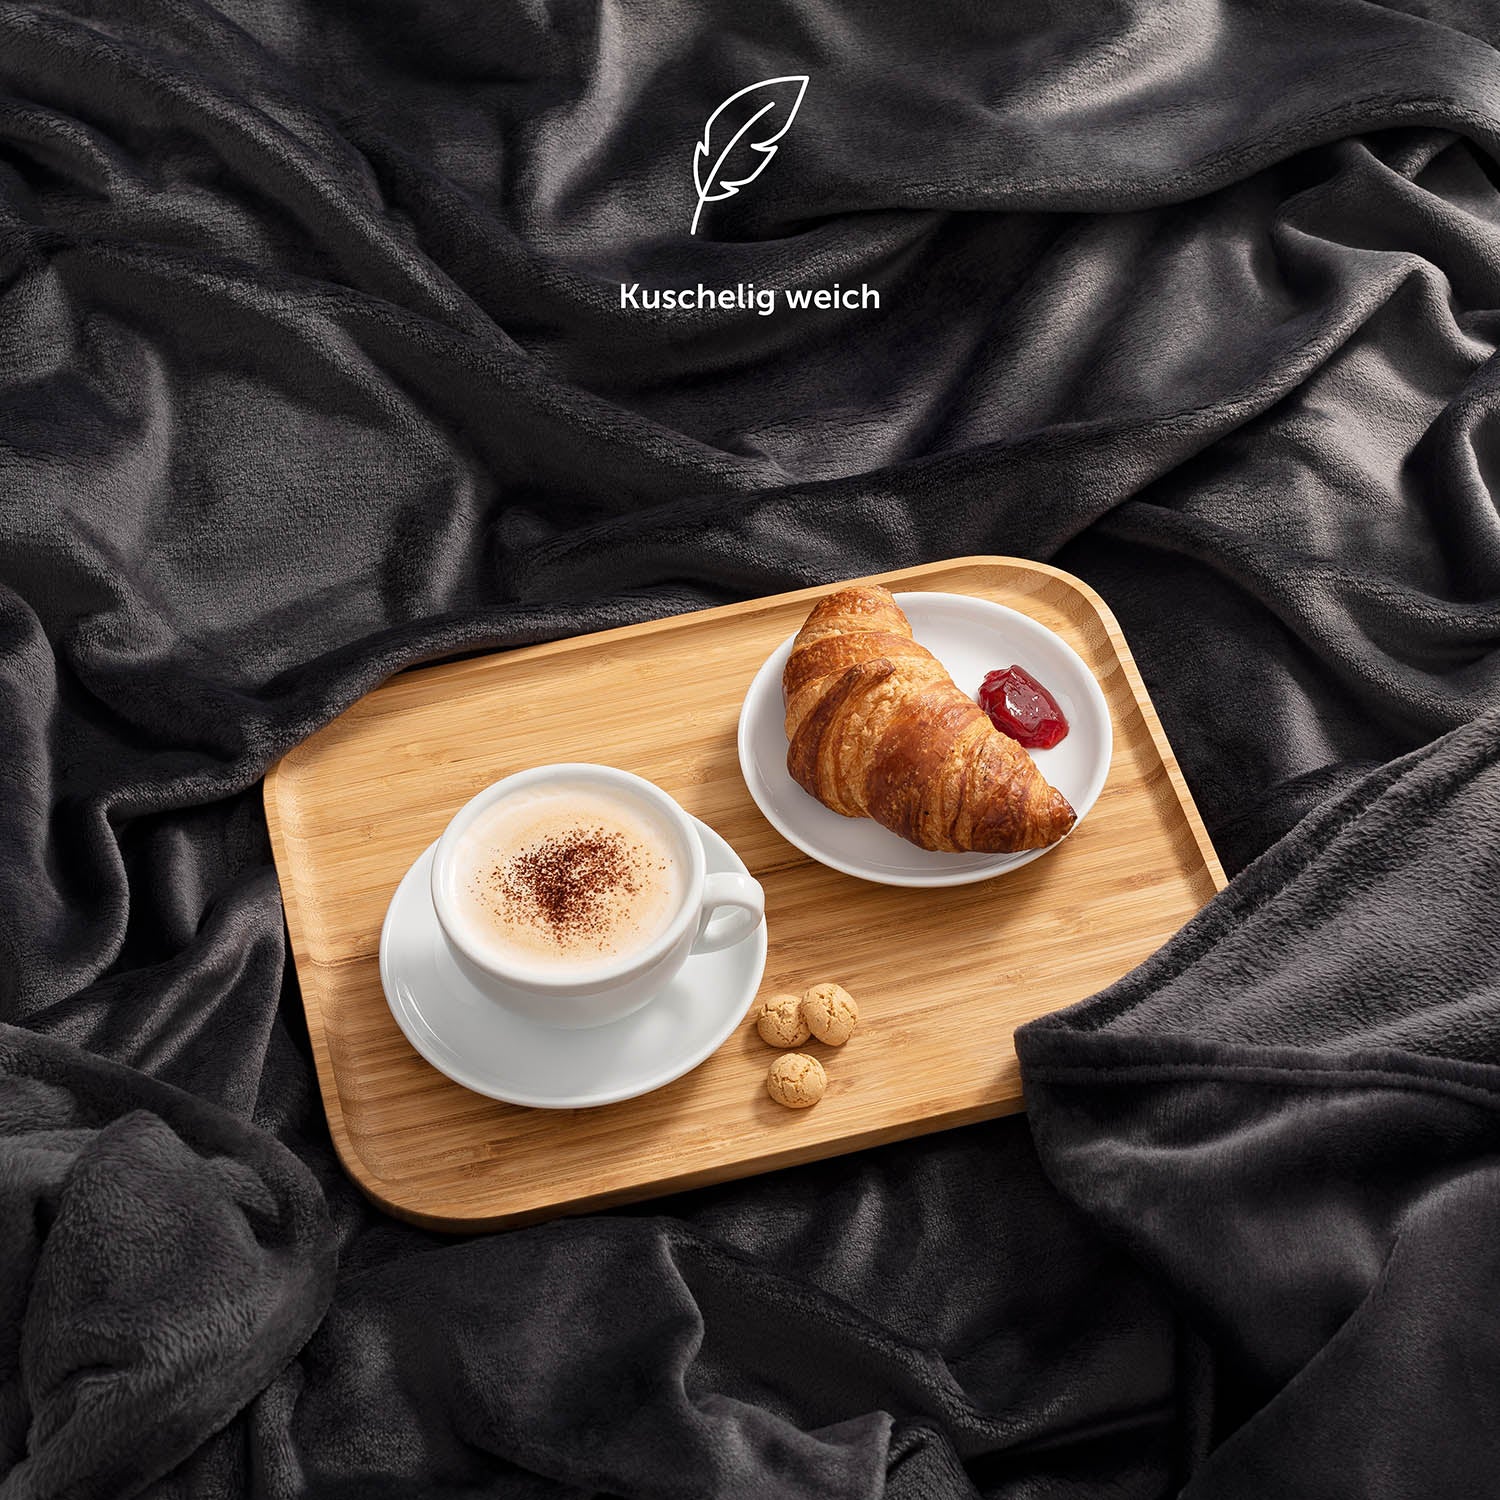 Eine marineblaue Fleece-Kuscheldecke auf einem Bett, mit einem Serviertablett, das ein Frühstück mit Kaffee und Croissant präsentiert, und der Beschreibung 'Kuschelig weich'.